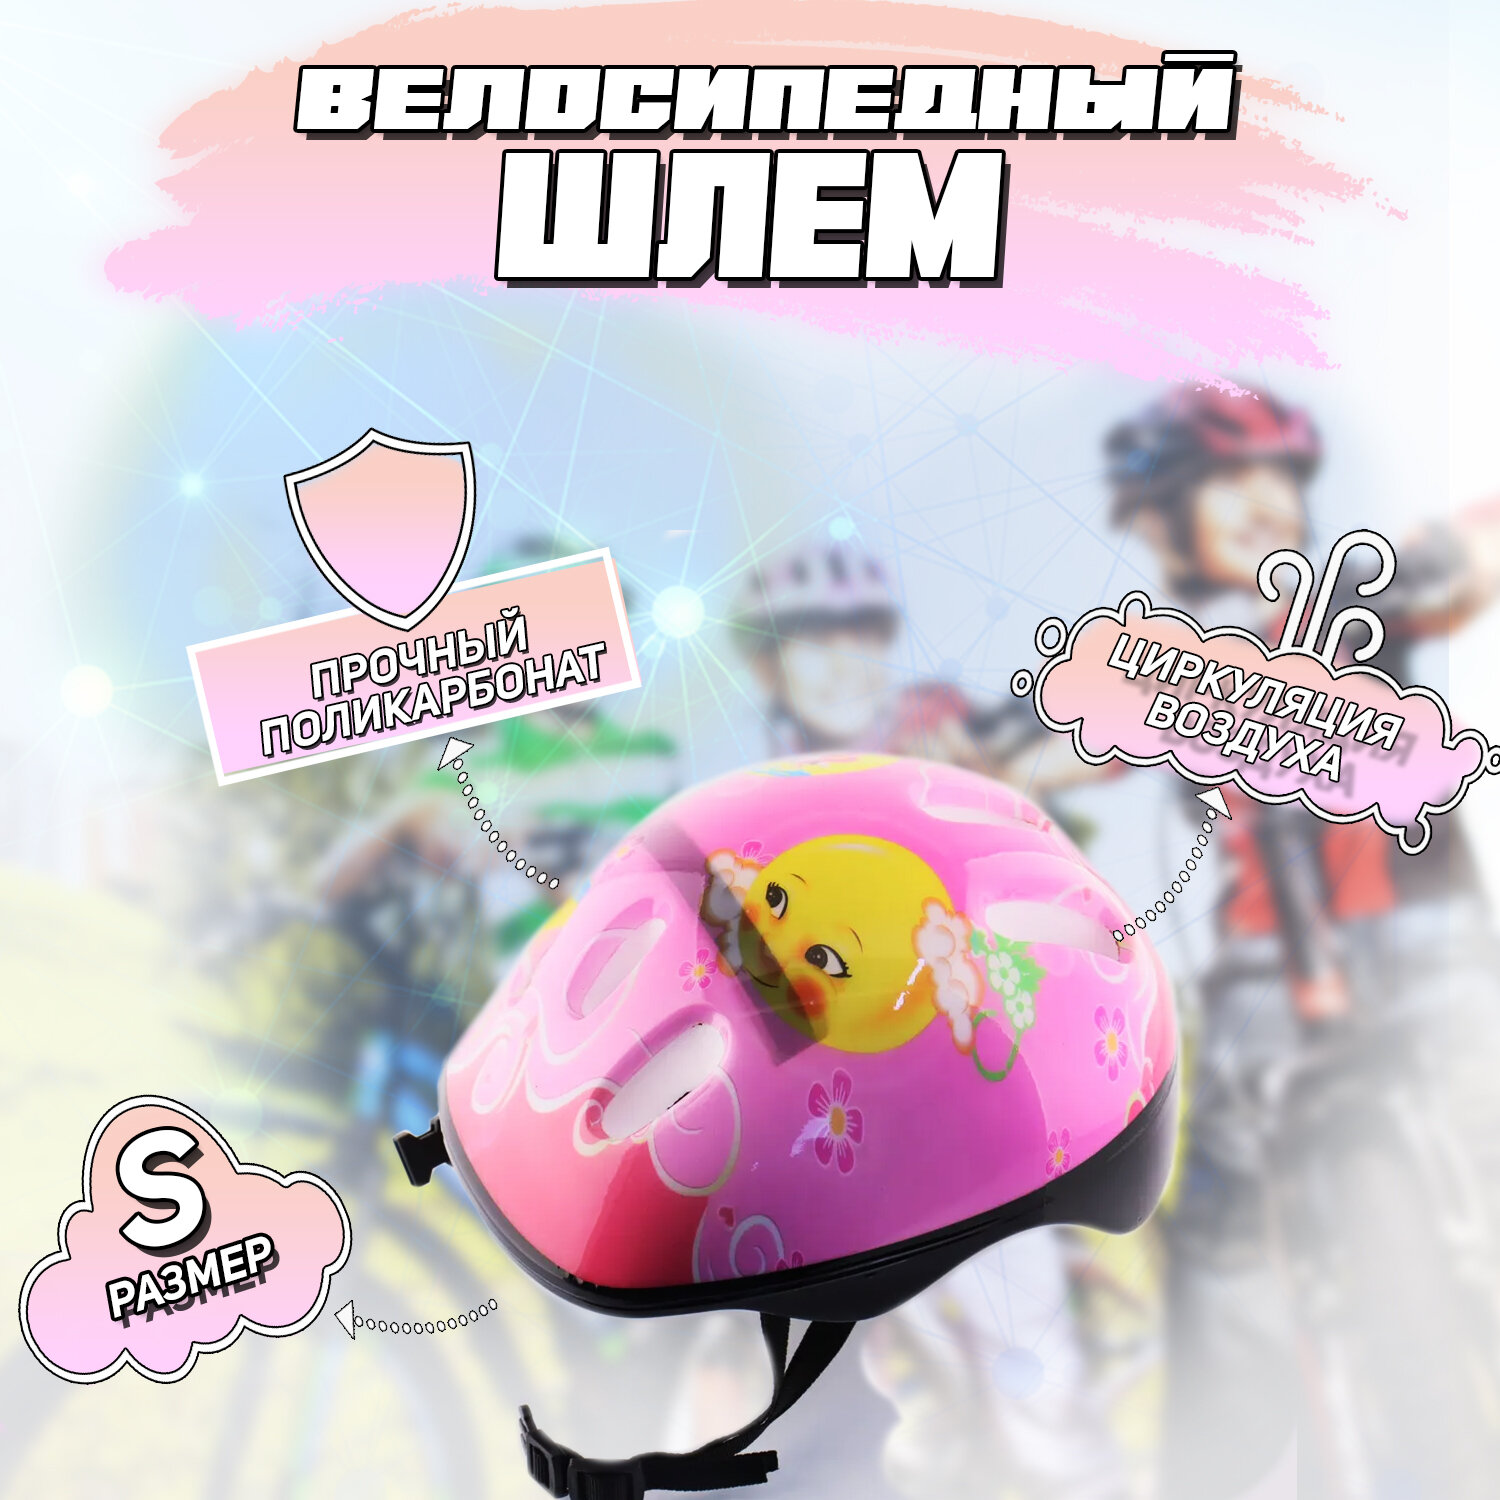 Шлем велосипедный детский (светло-розовый) "SPORTS" mod: B